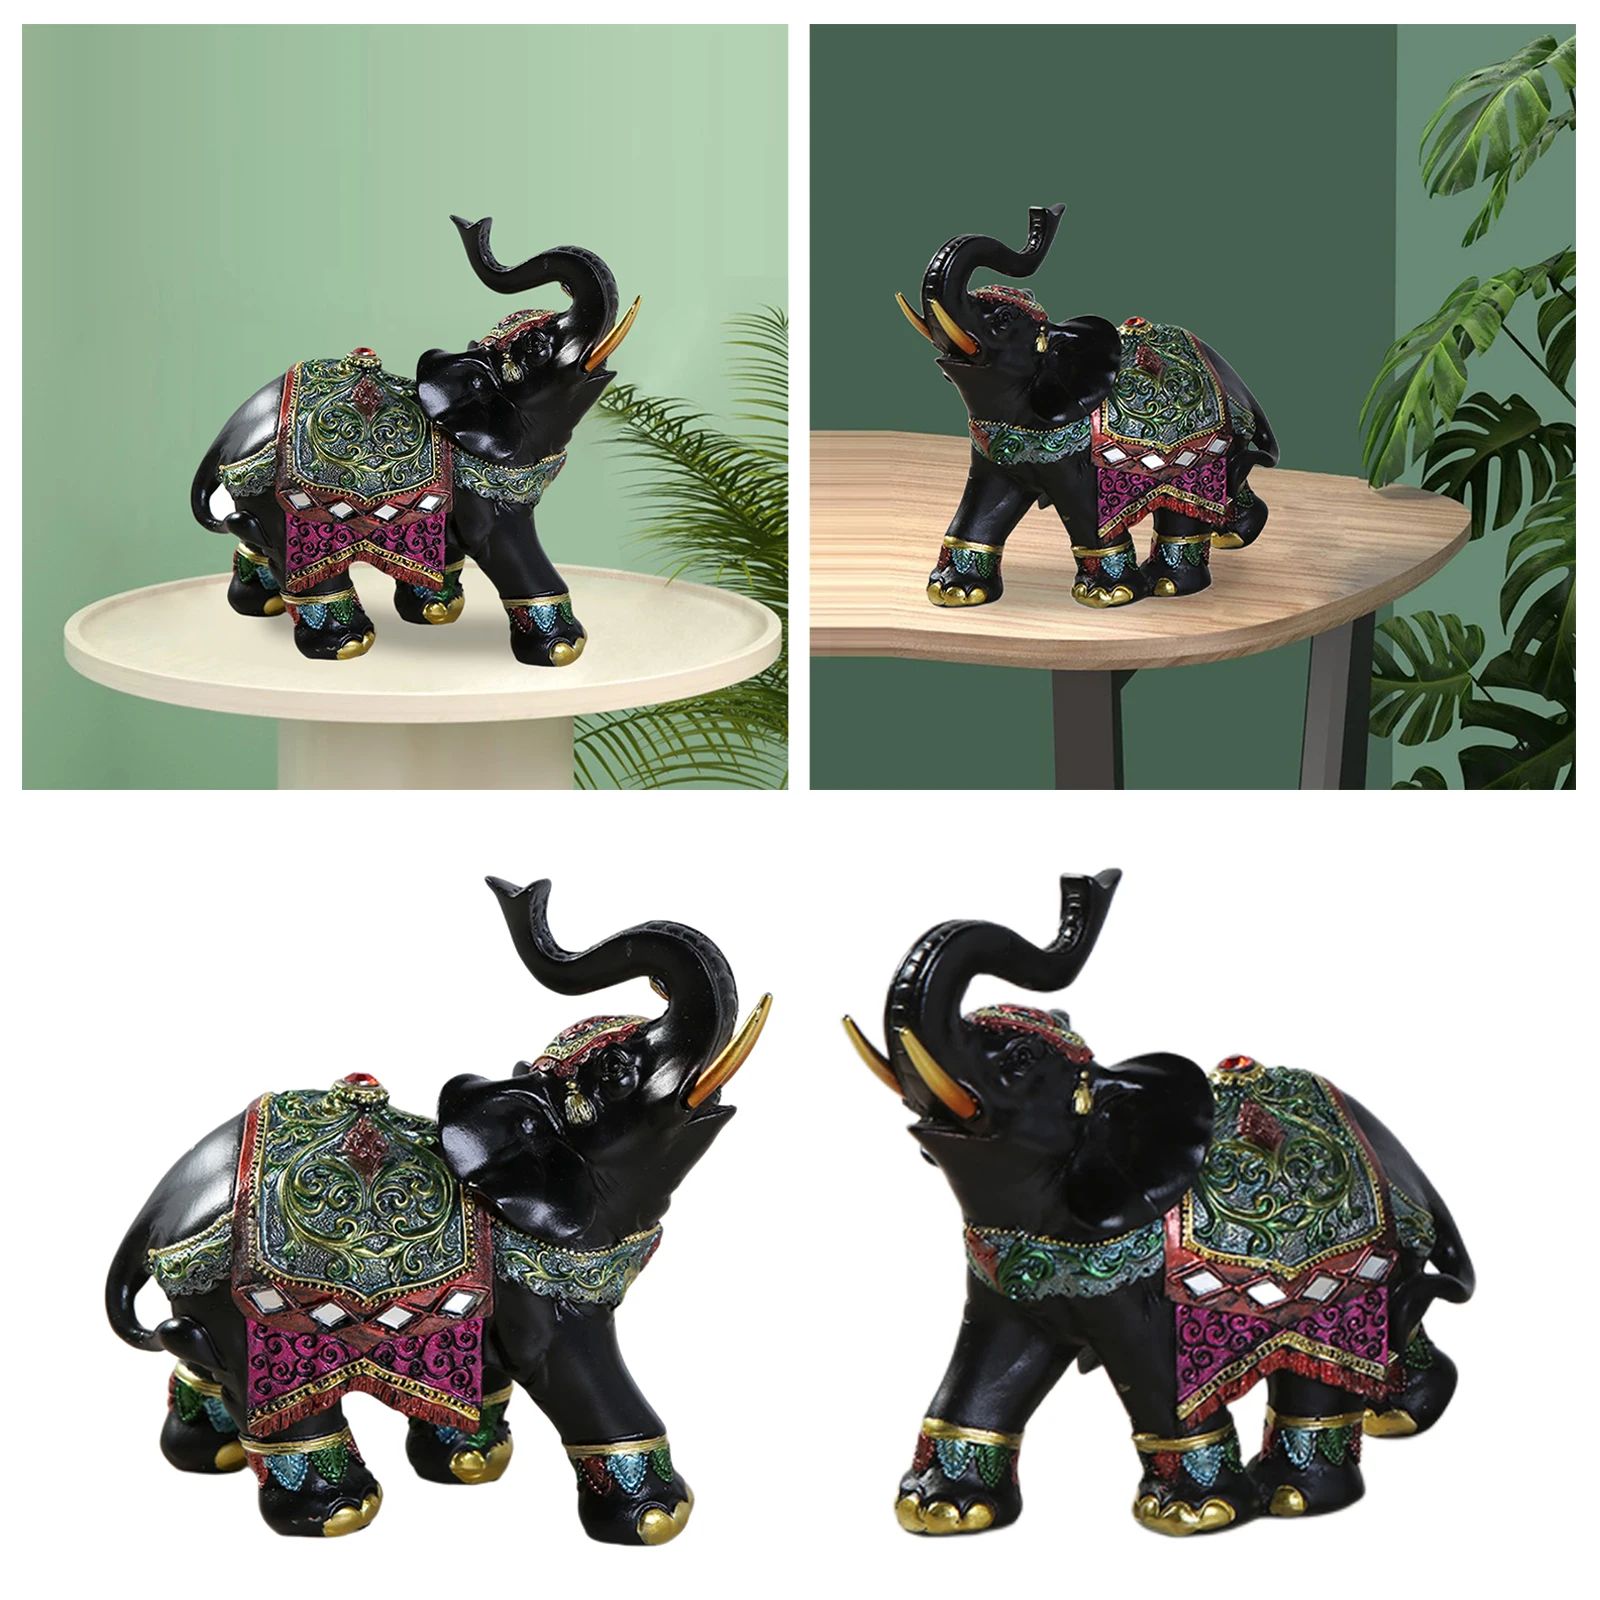 Modern Elephant Trunk Statue Sculpture Figurine Home Decor Good Lucky Gift